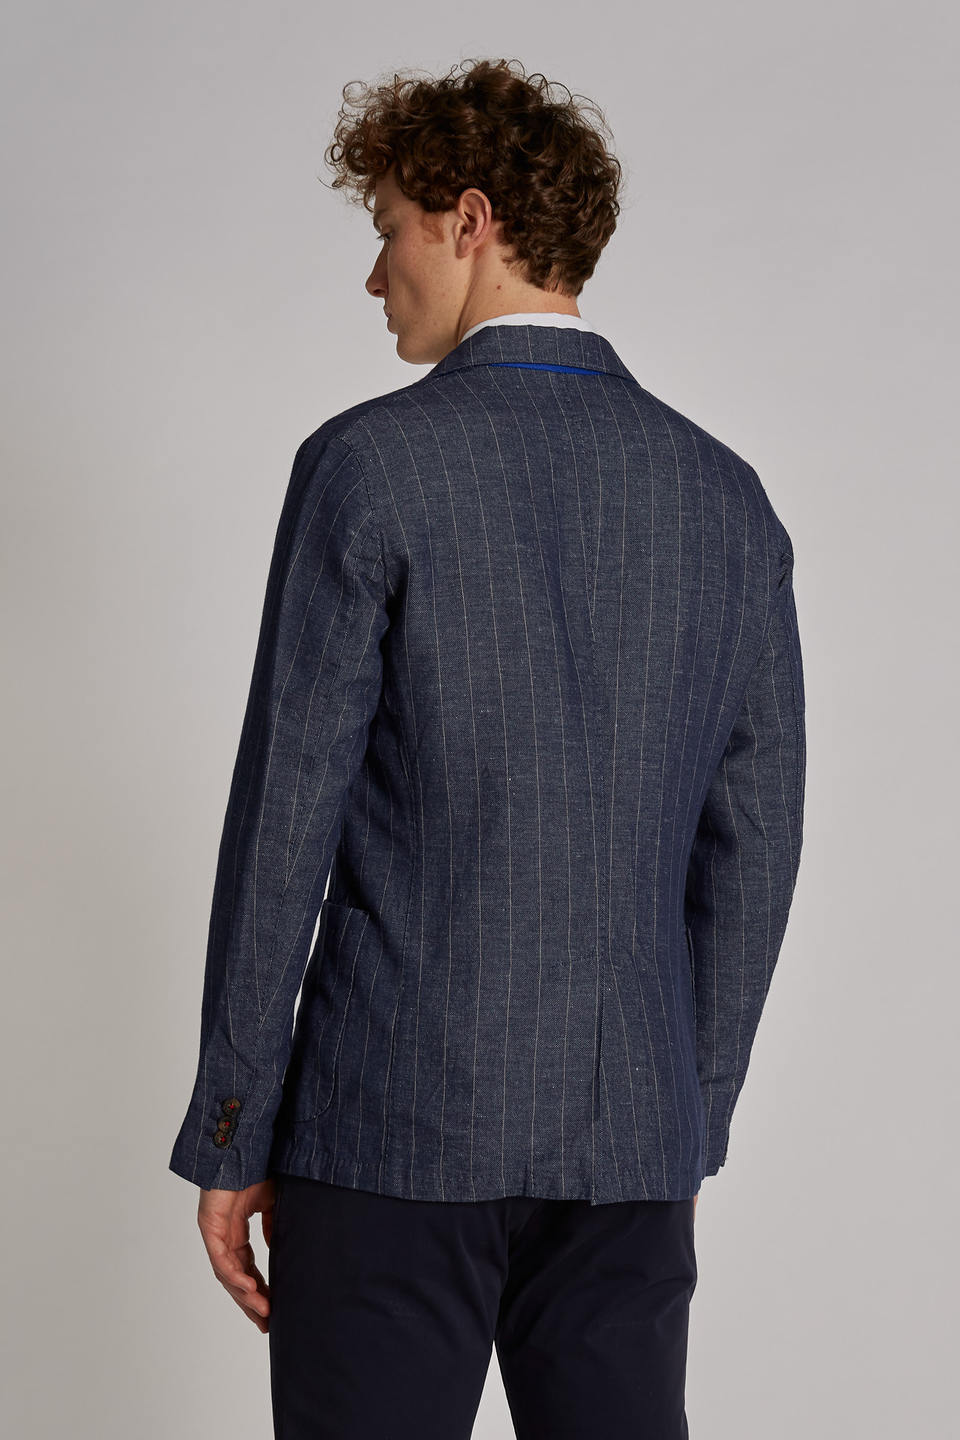 Giacca da uomo in cotone misto lino modello blazer regular fit - La Martina - Official Online Shop